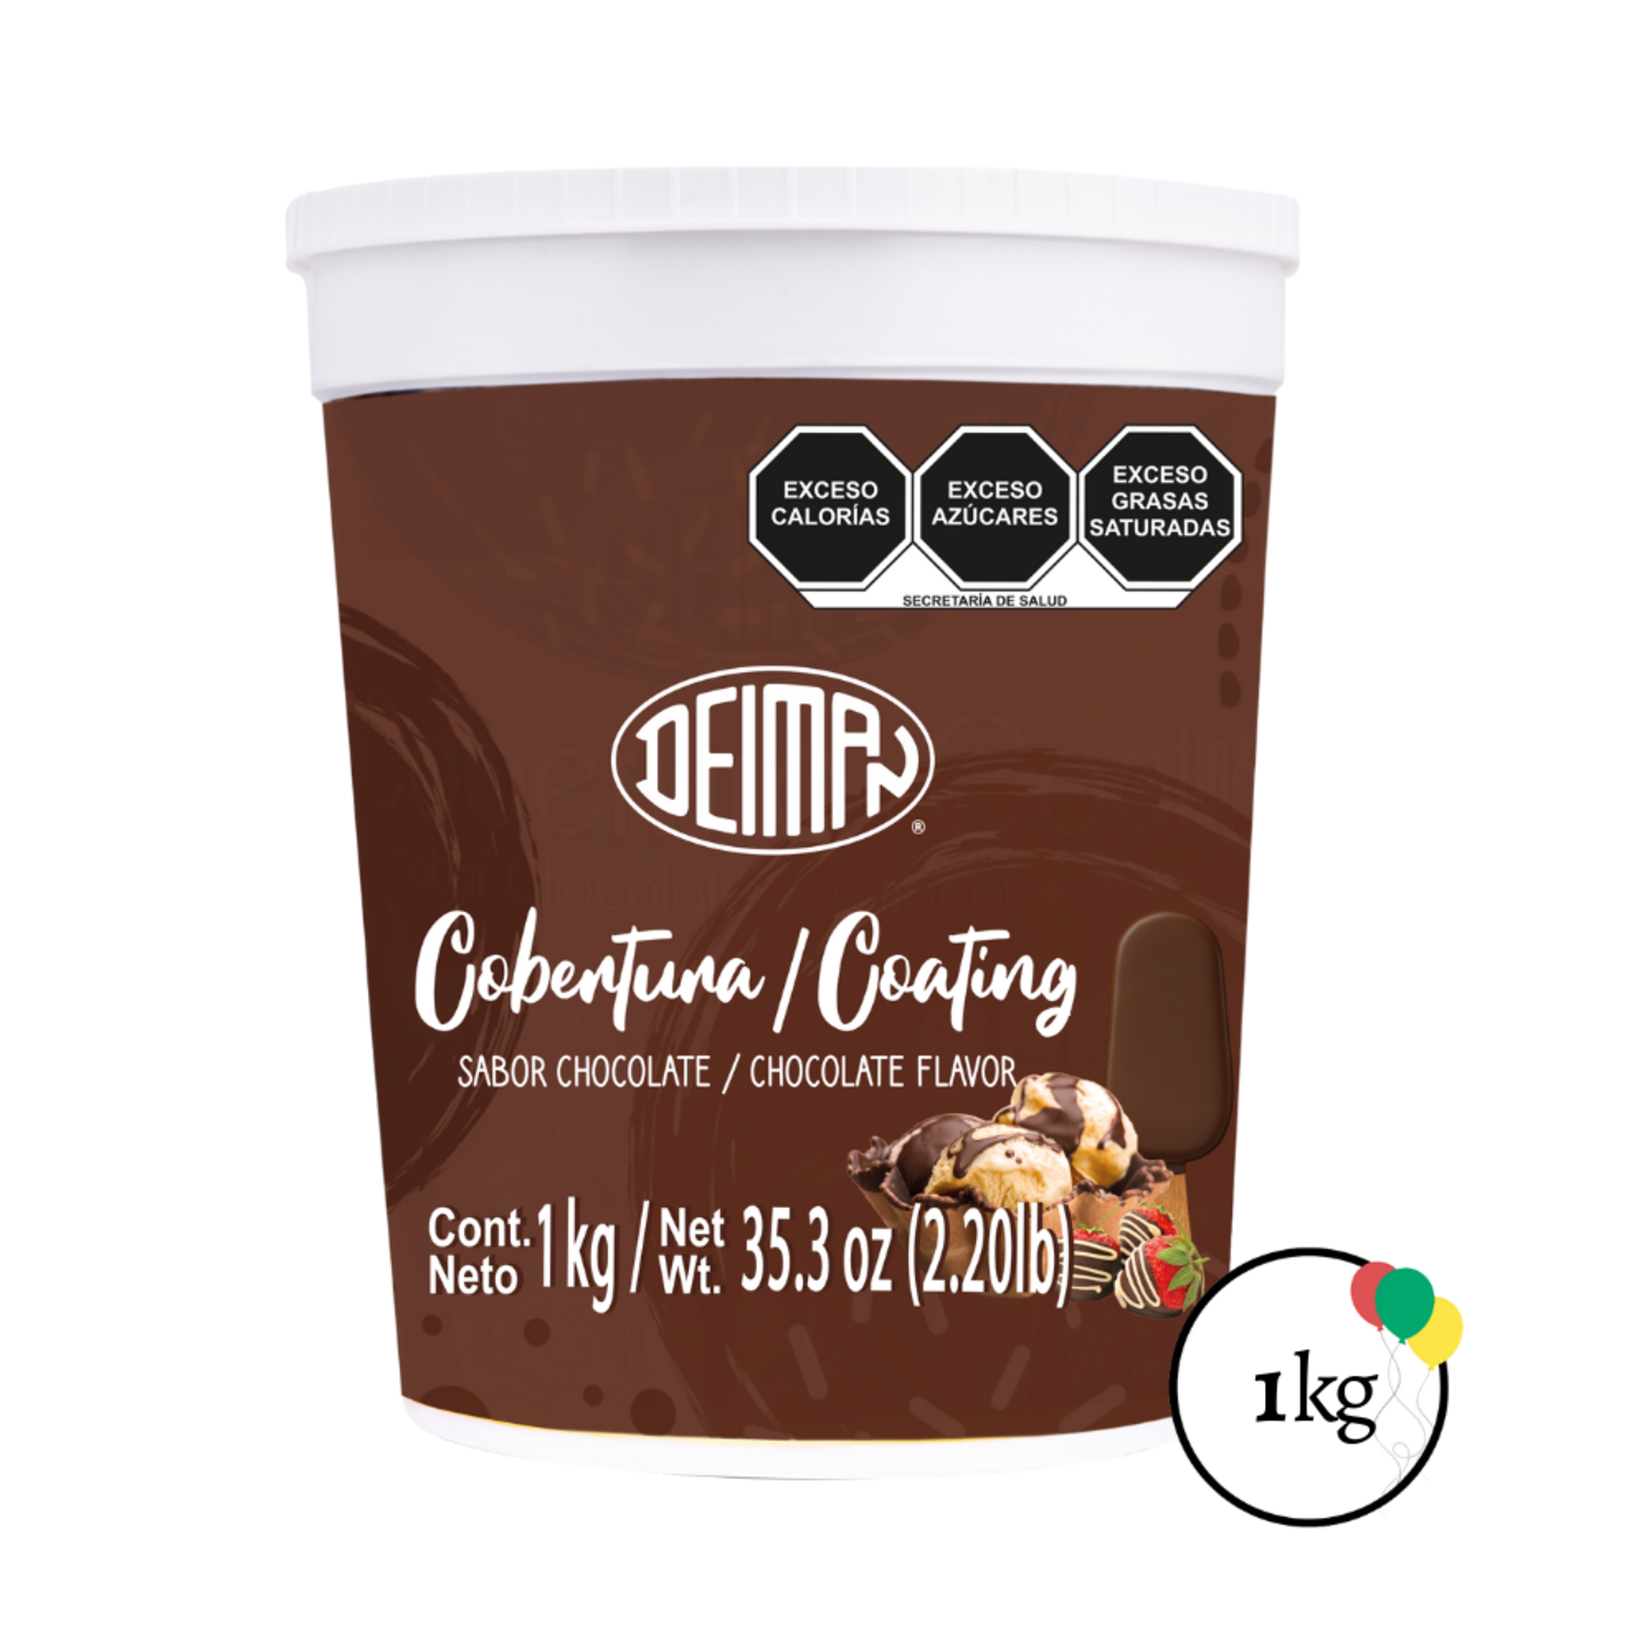 Deiman Deiman Cobertura / Coating Chocolate 35.3oz